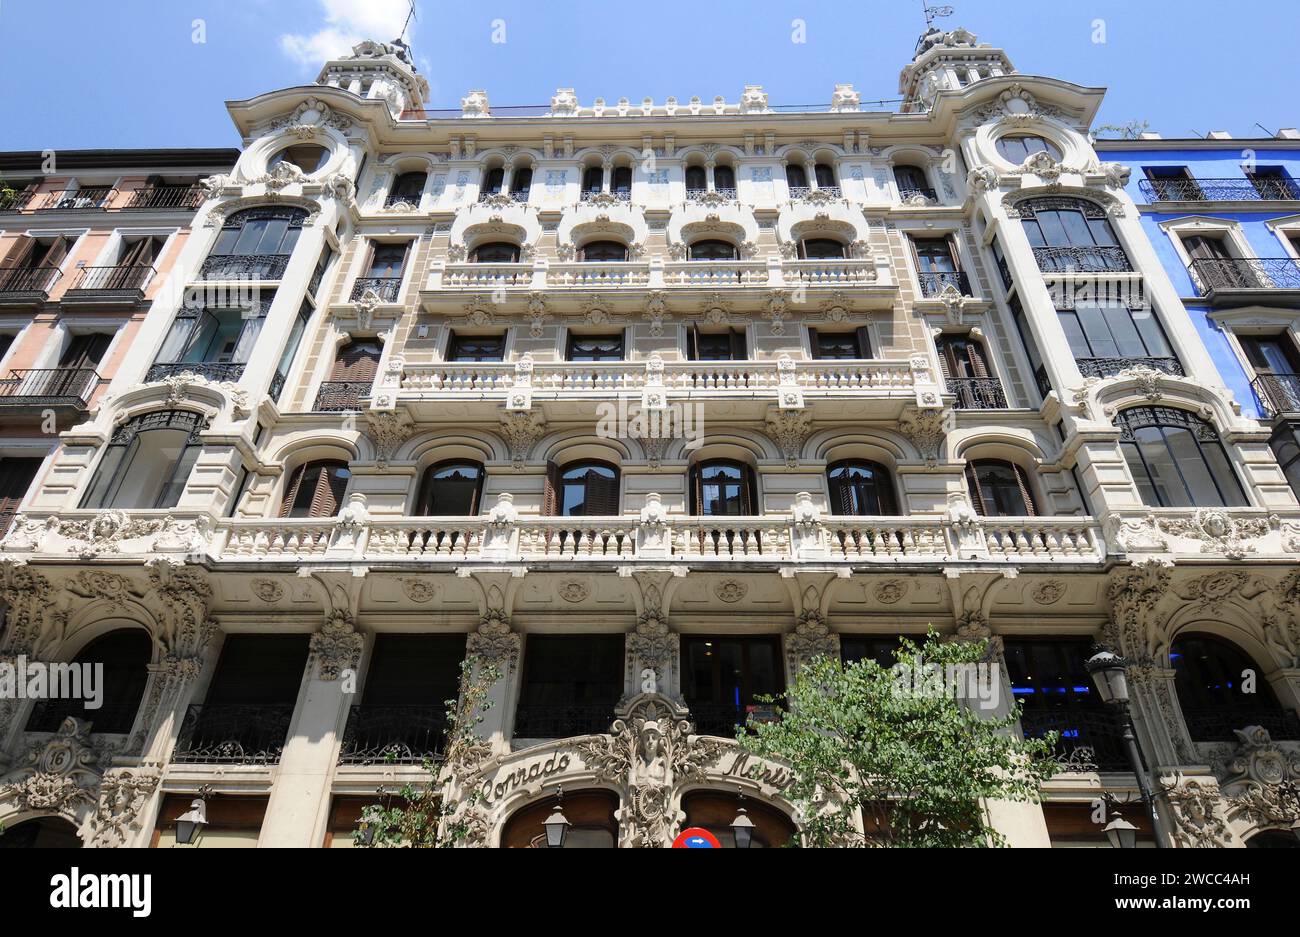 Edificio de la Compañia Colonial ou Edificio Conrado Martin. Madrid, Espagne. Banque D'Images